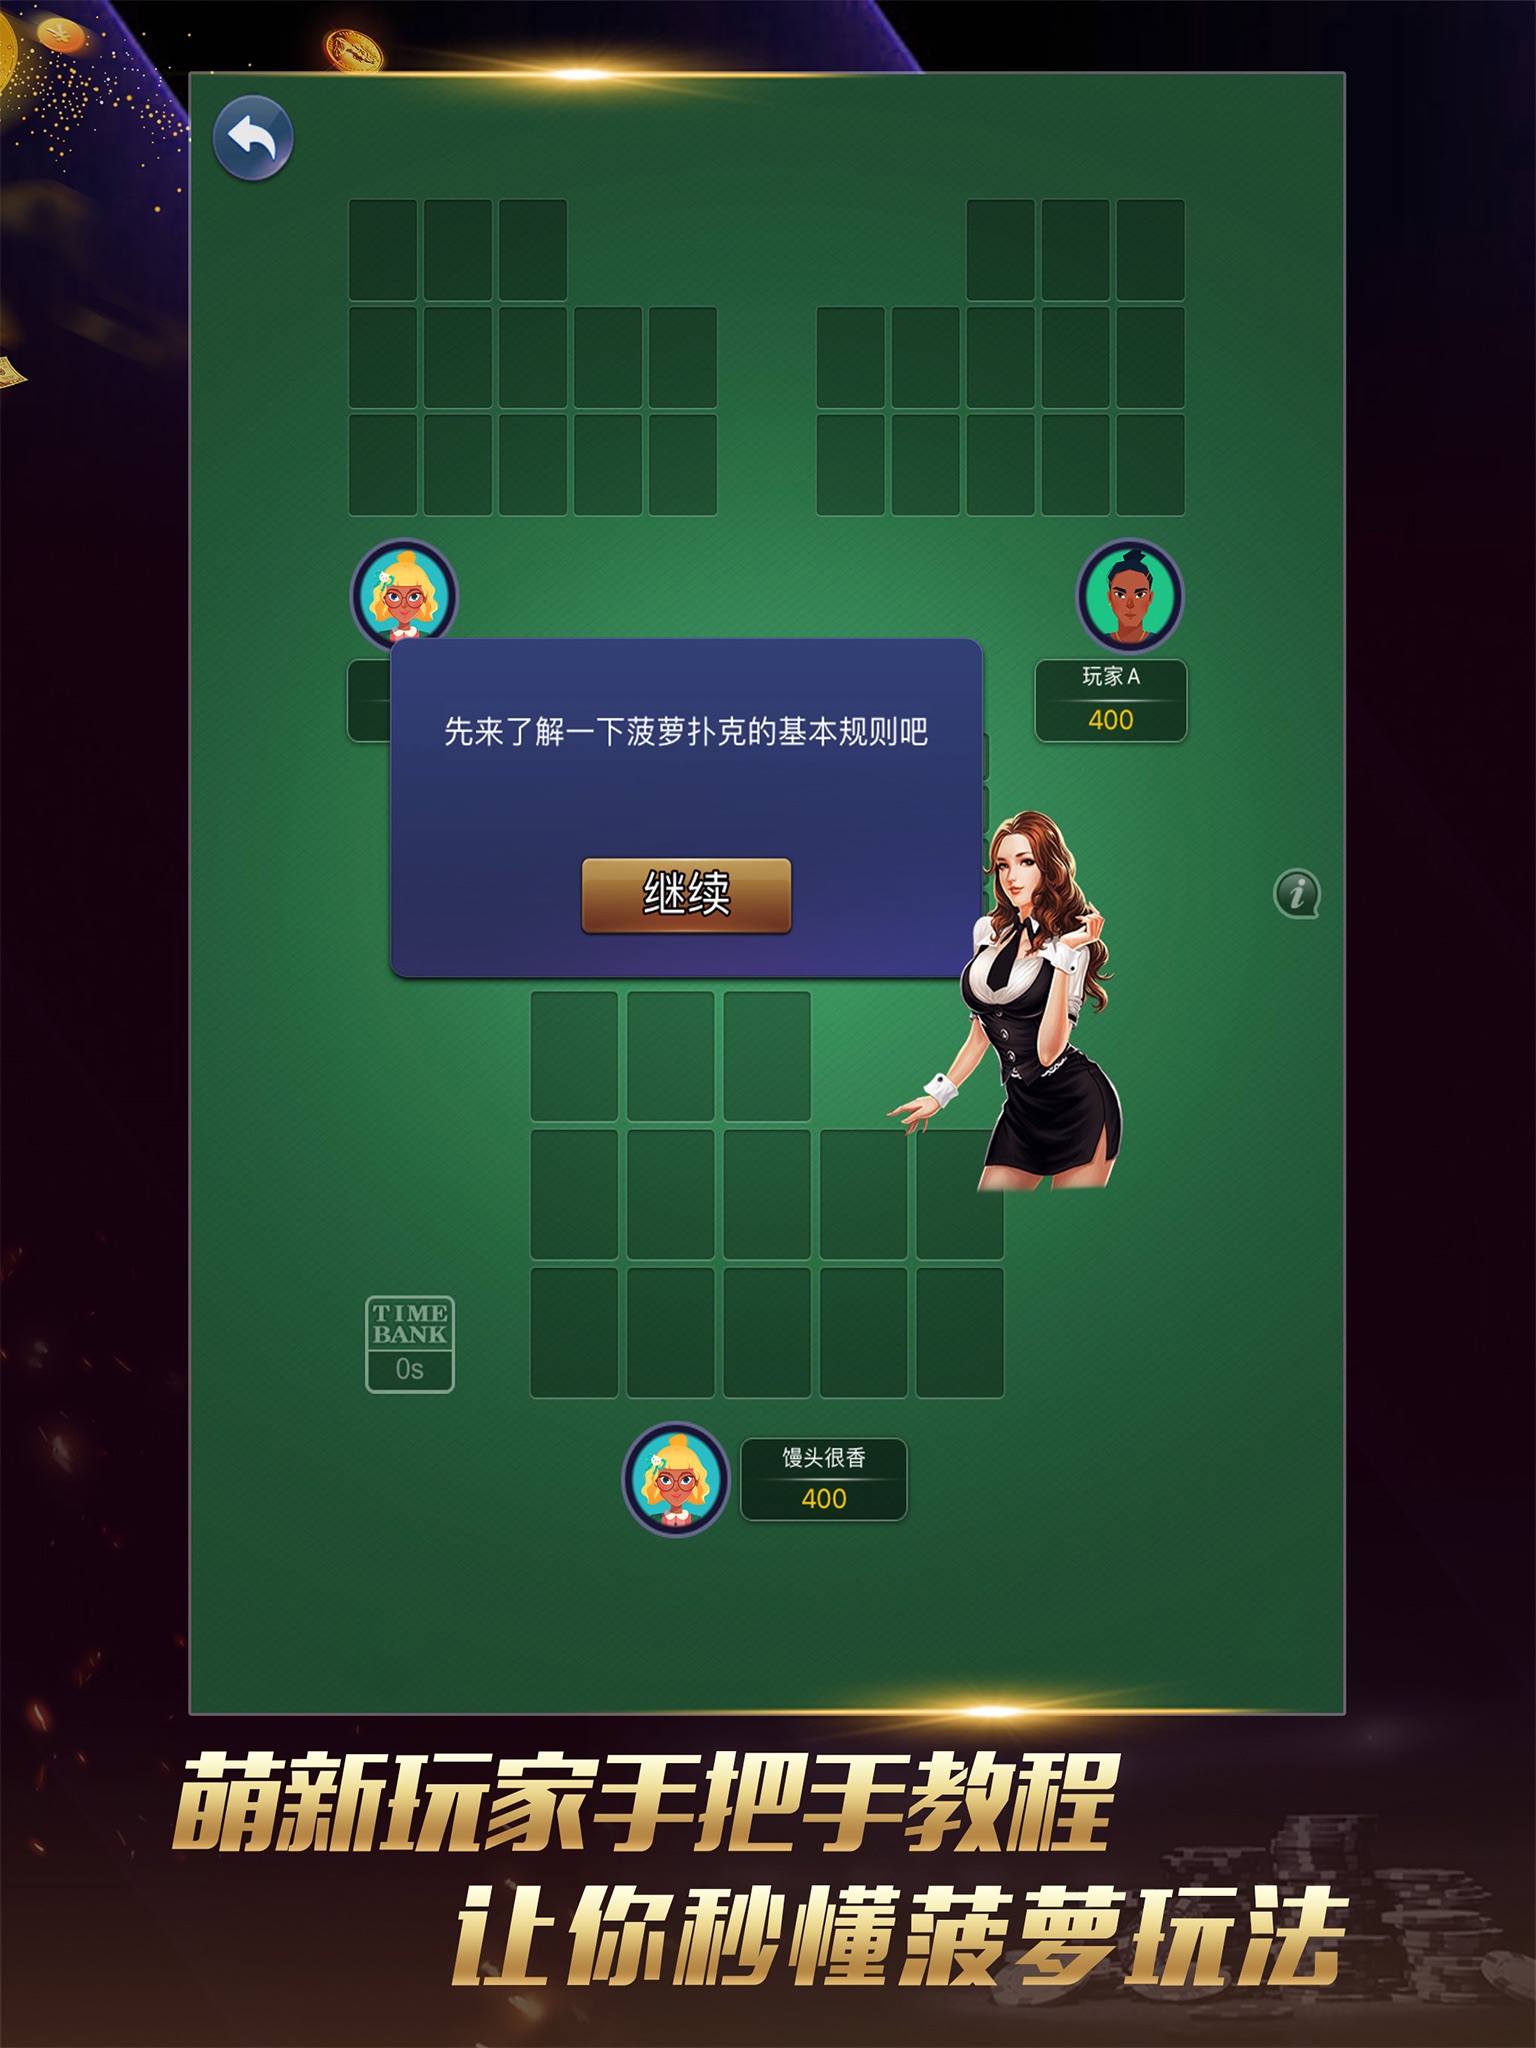 联众菠萝扑克 screenshot 4